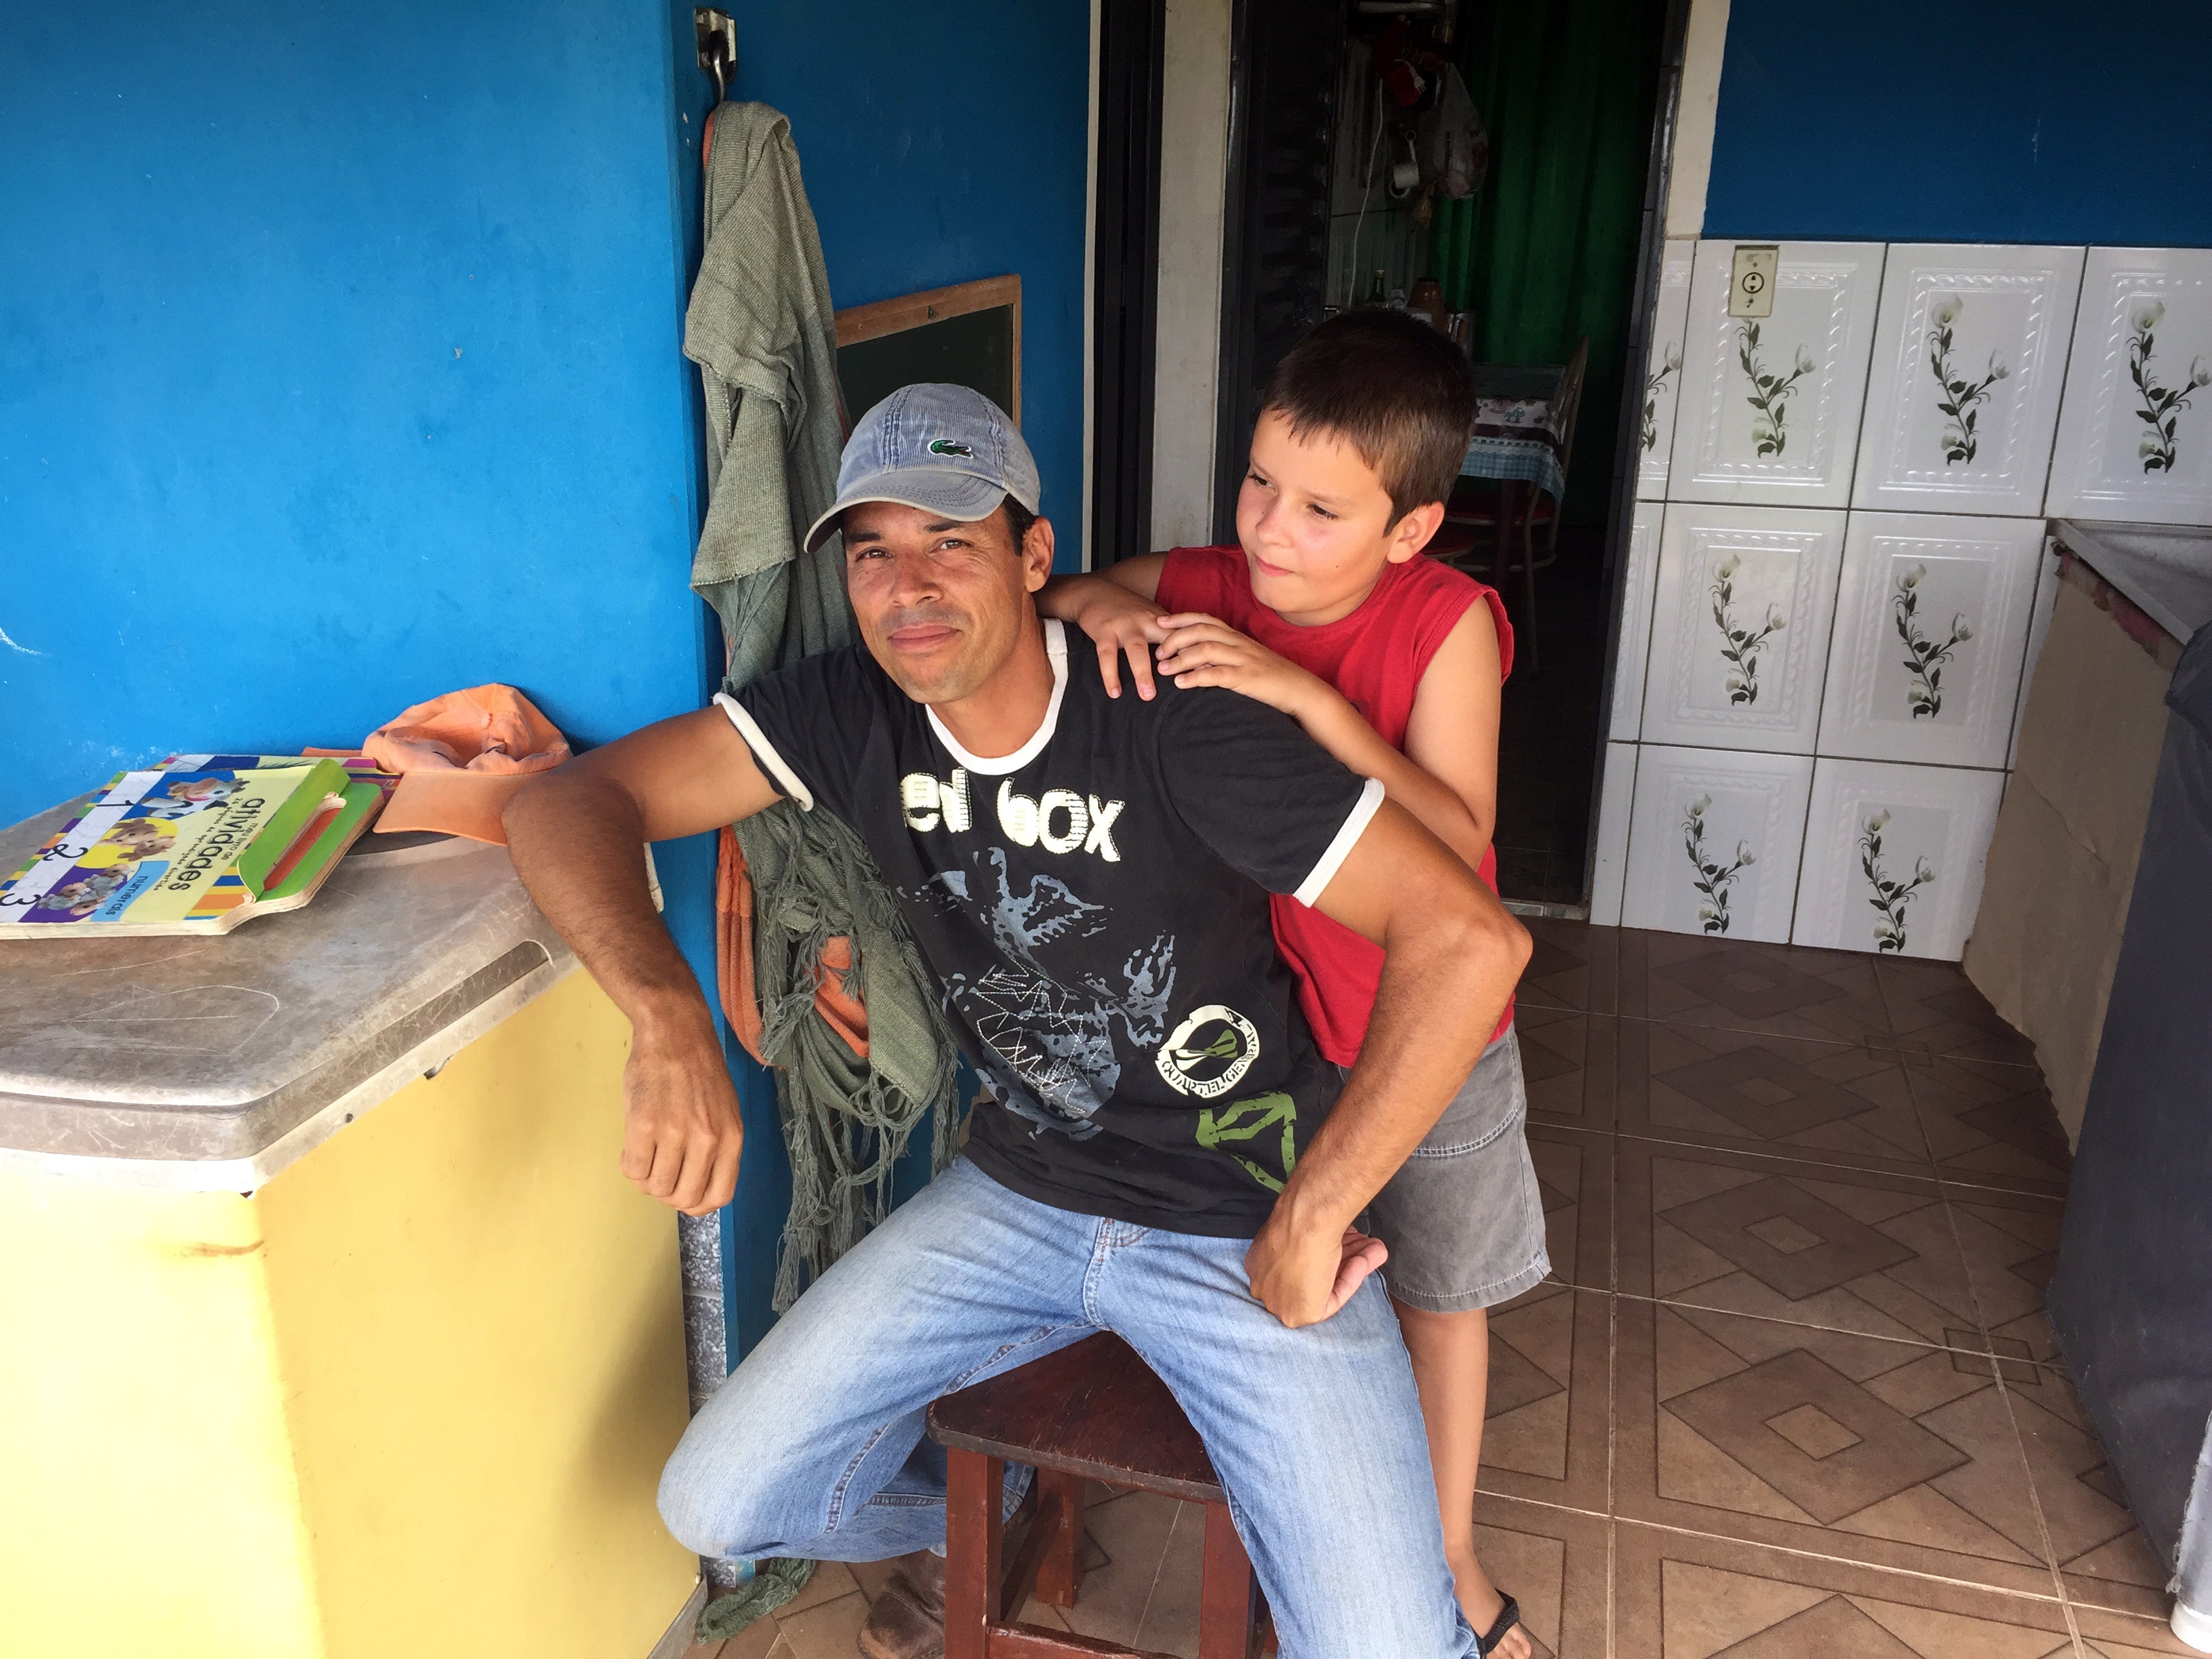 Valdir Ferreira and his son